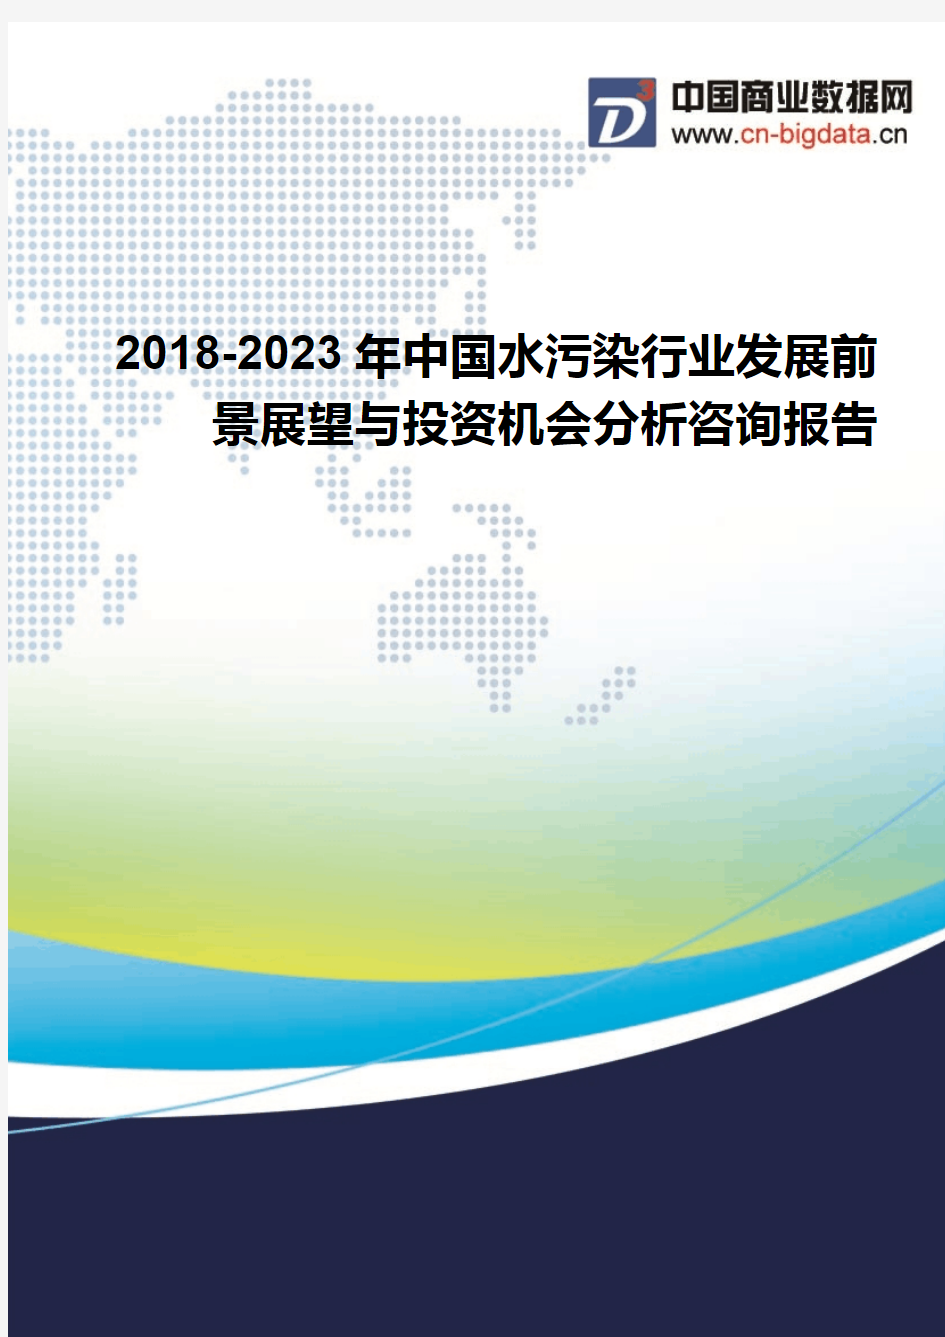 2018-2023年中国水污染行业发展前景展望与投资机会分析咨询报告